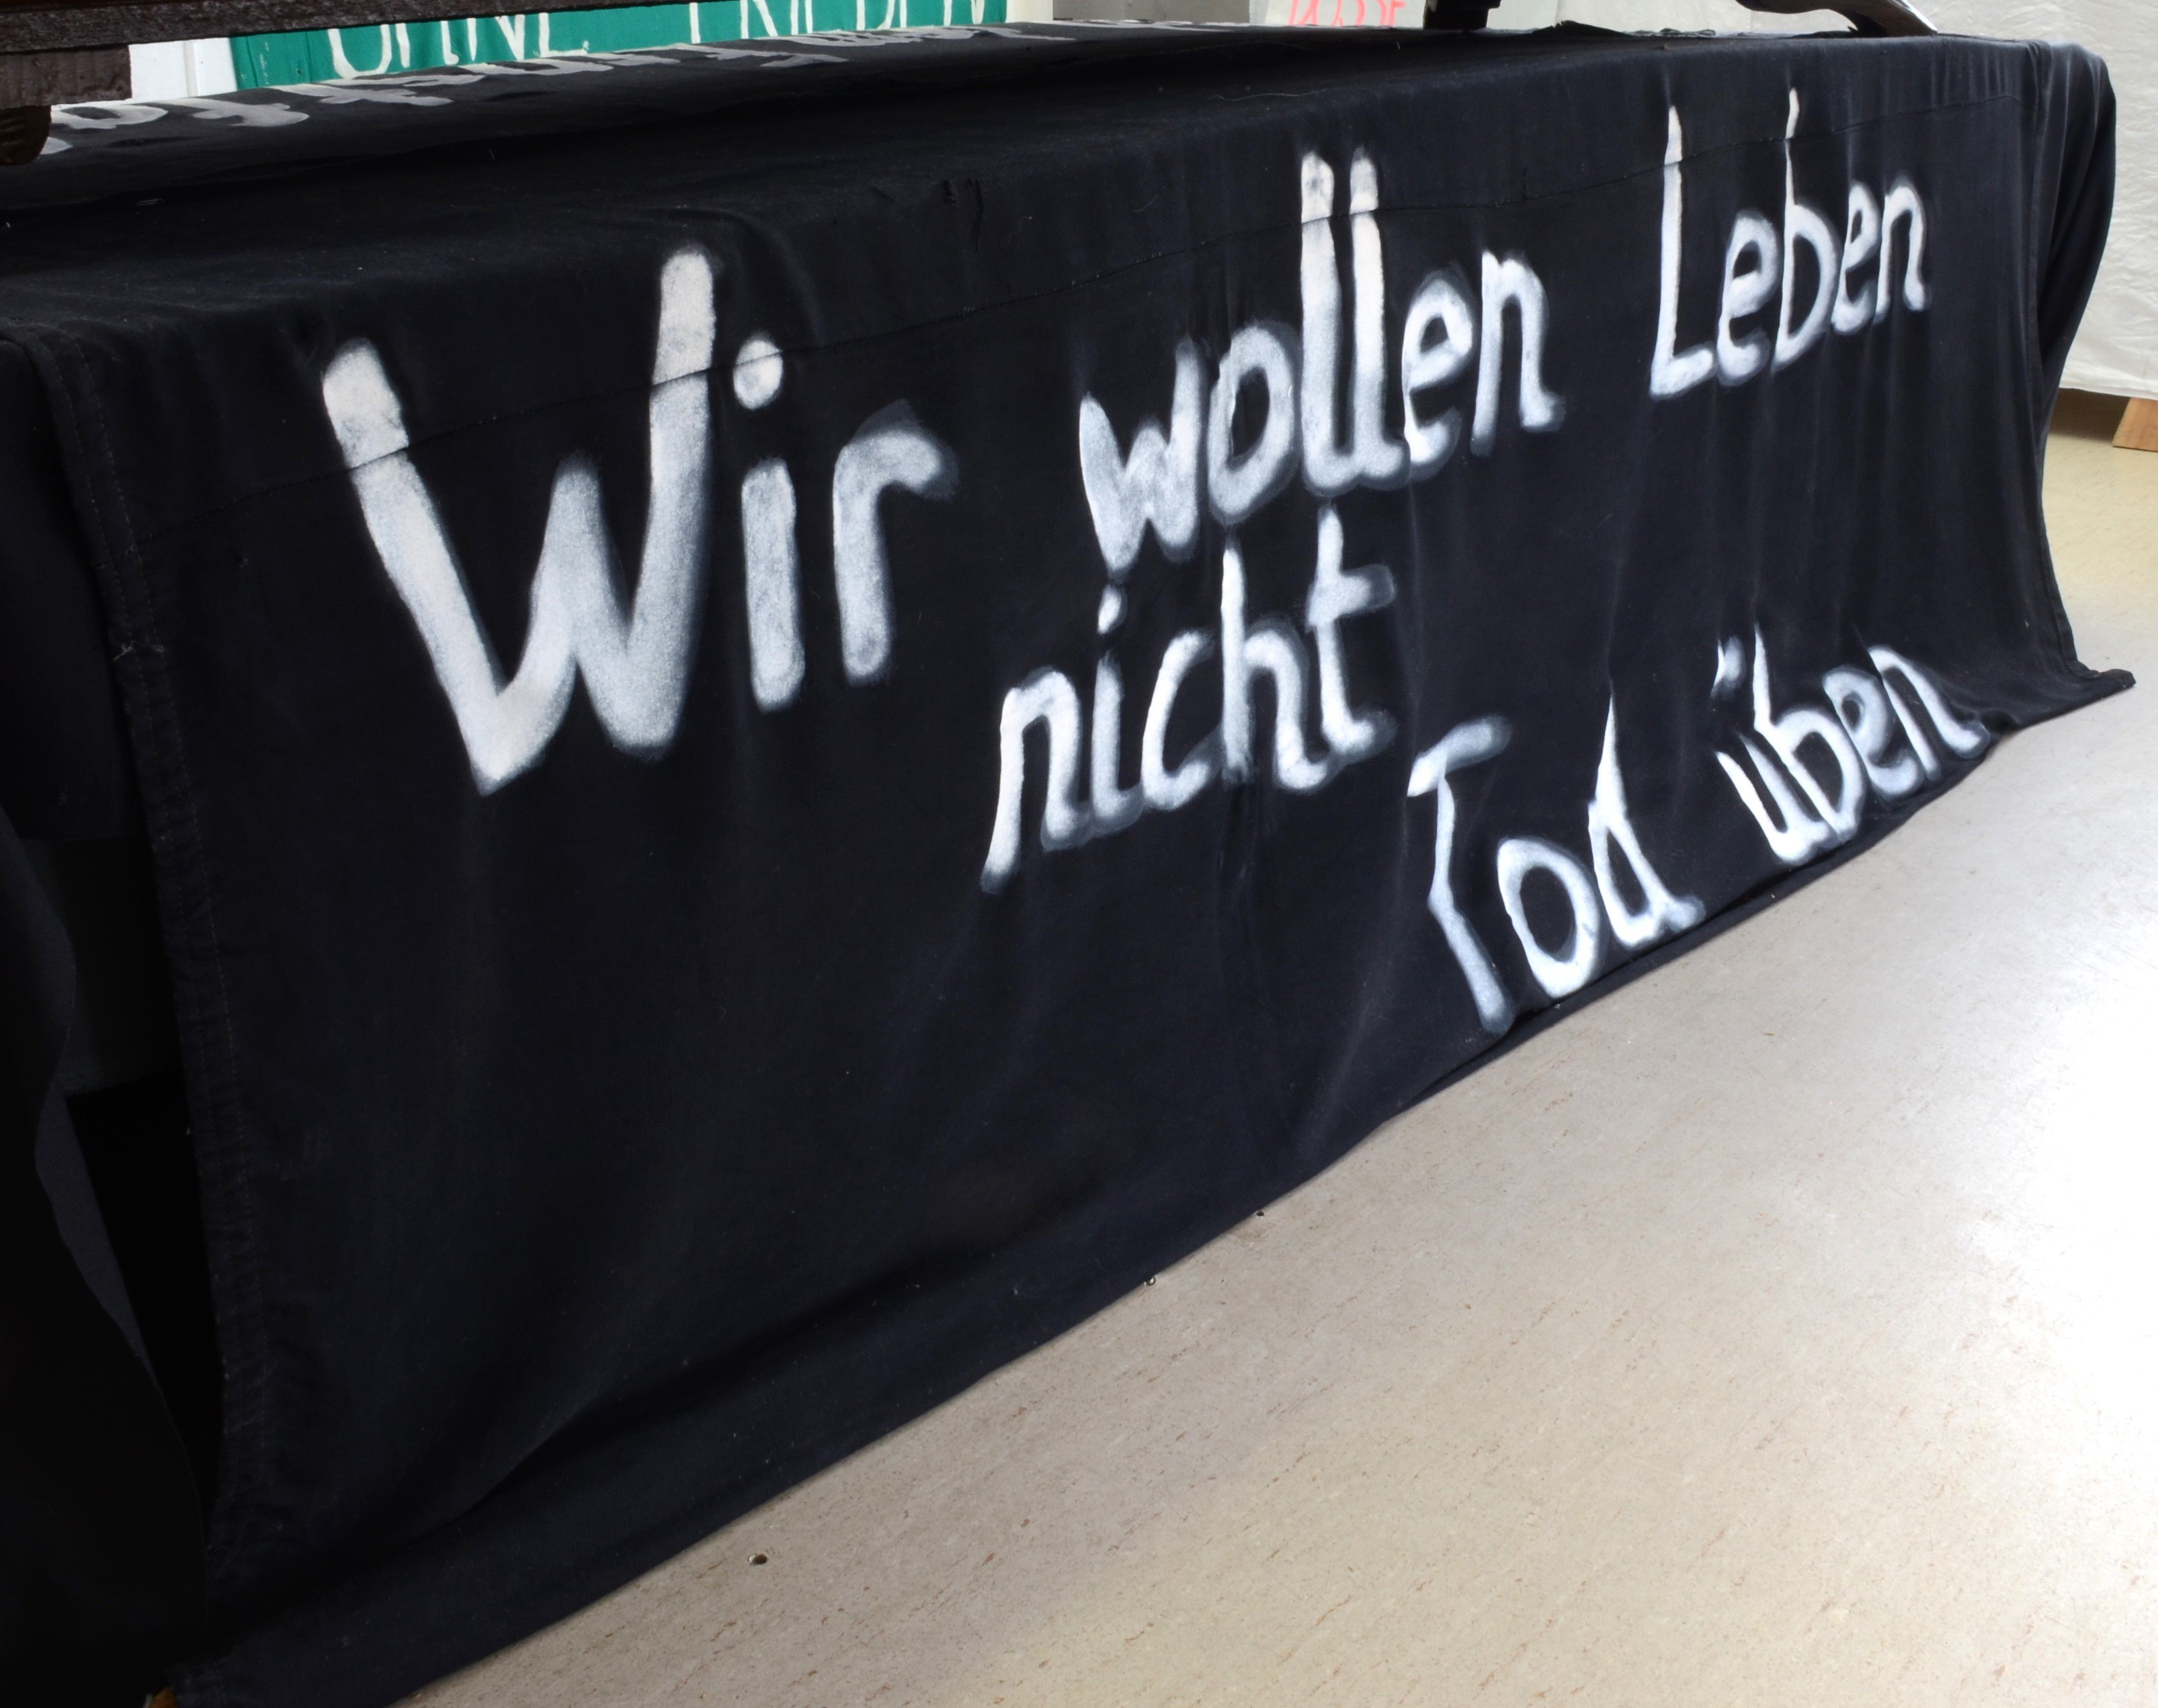 Transparent: "Wir wollen Leben nicht Tod üben" für den Protest gegen die Atomschlagübung "Dosse 83" (DDR Geschichtsmuseum im Dokumentationszentrum Perleberg CC BY-SA)